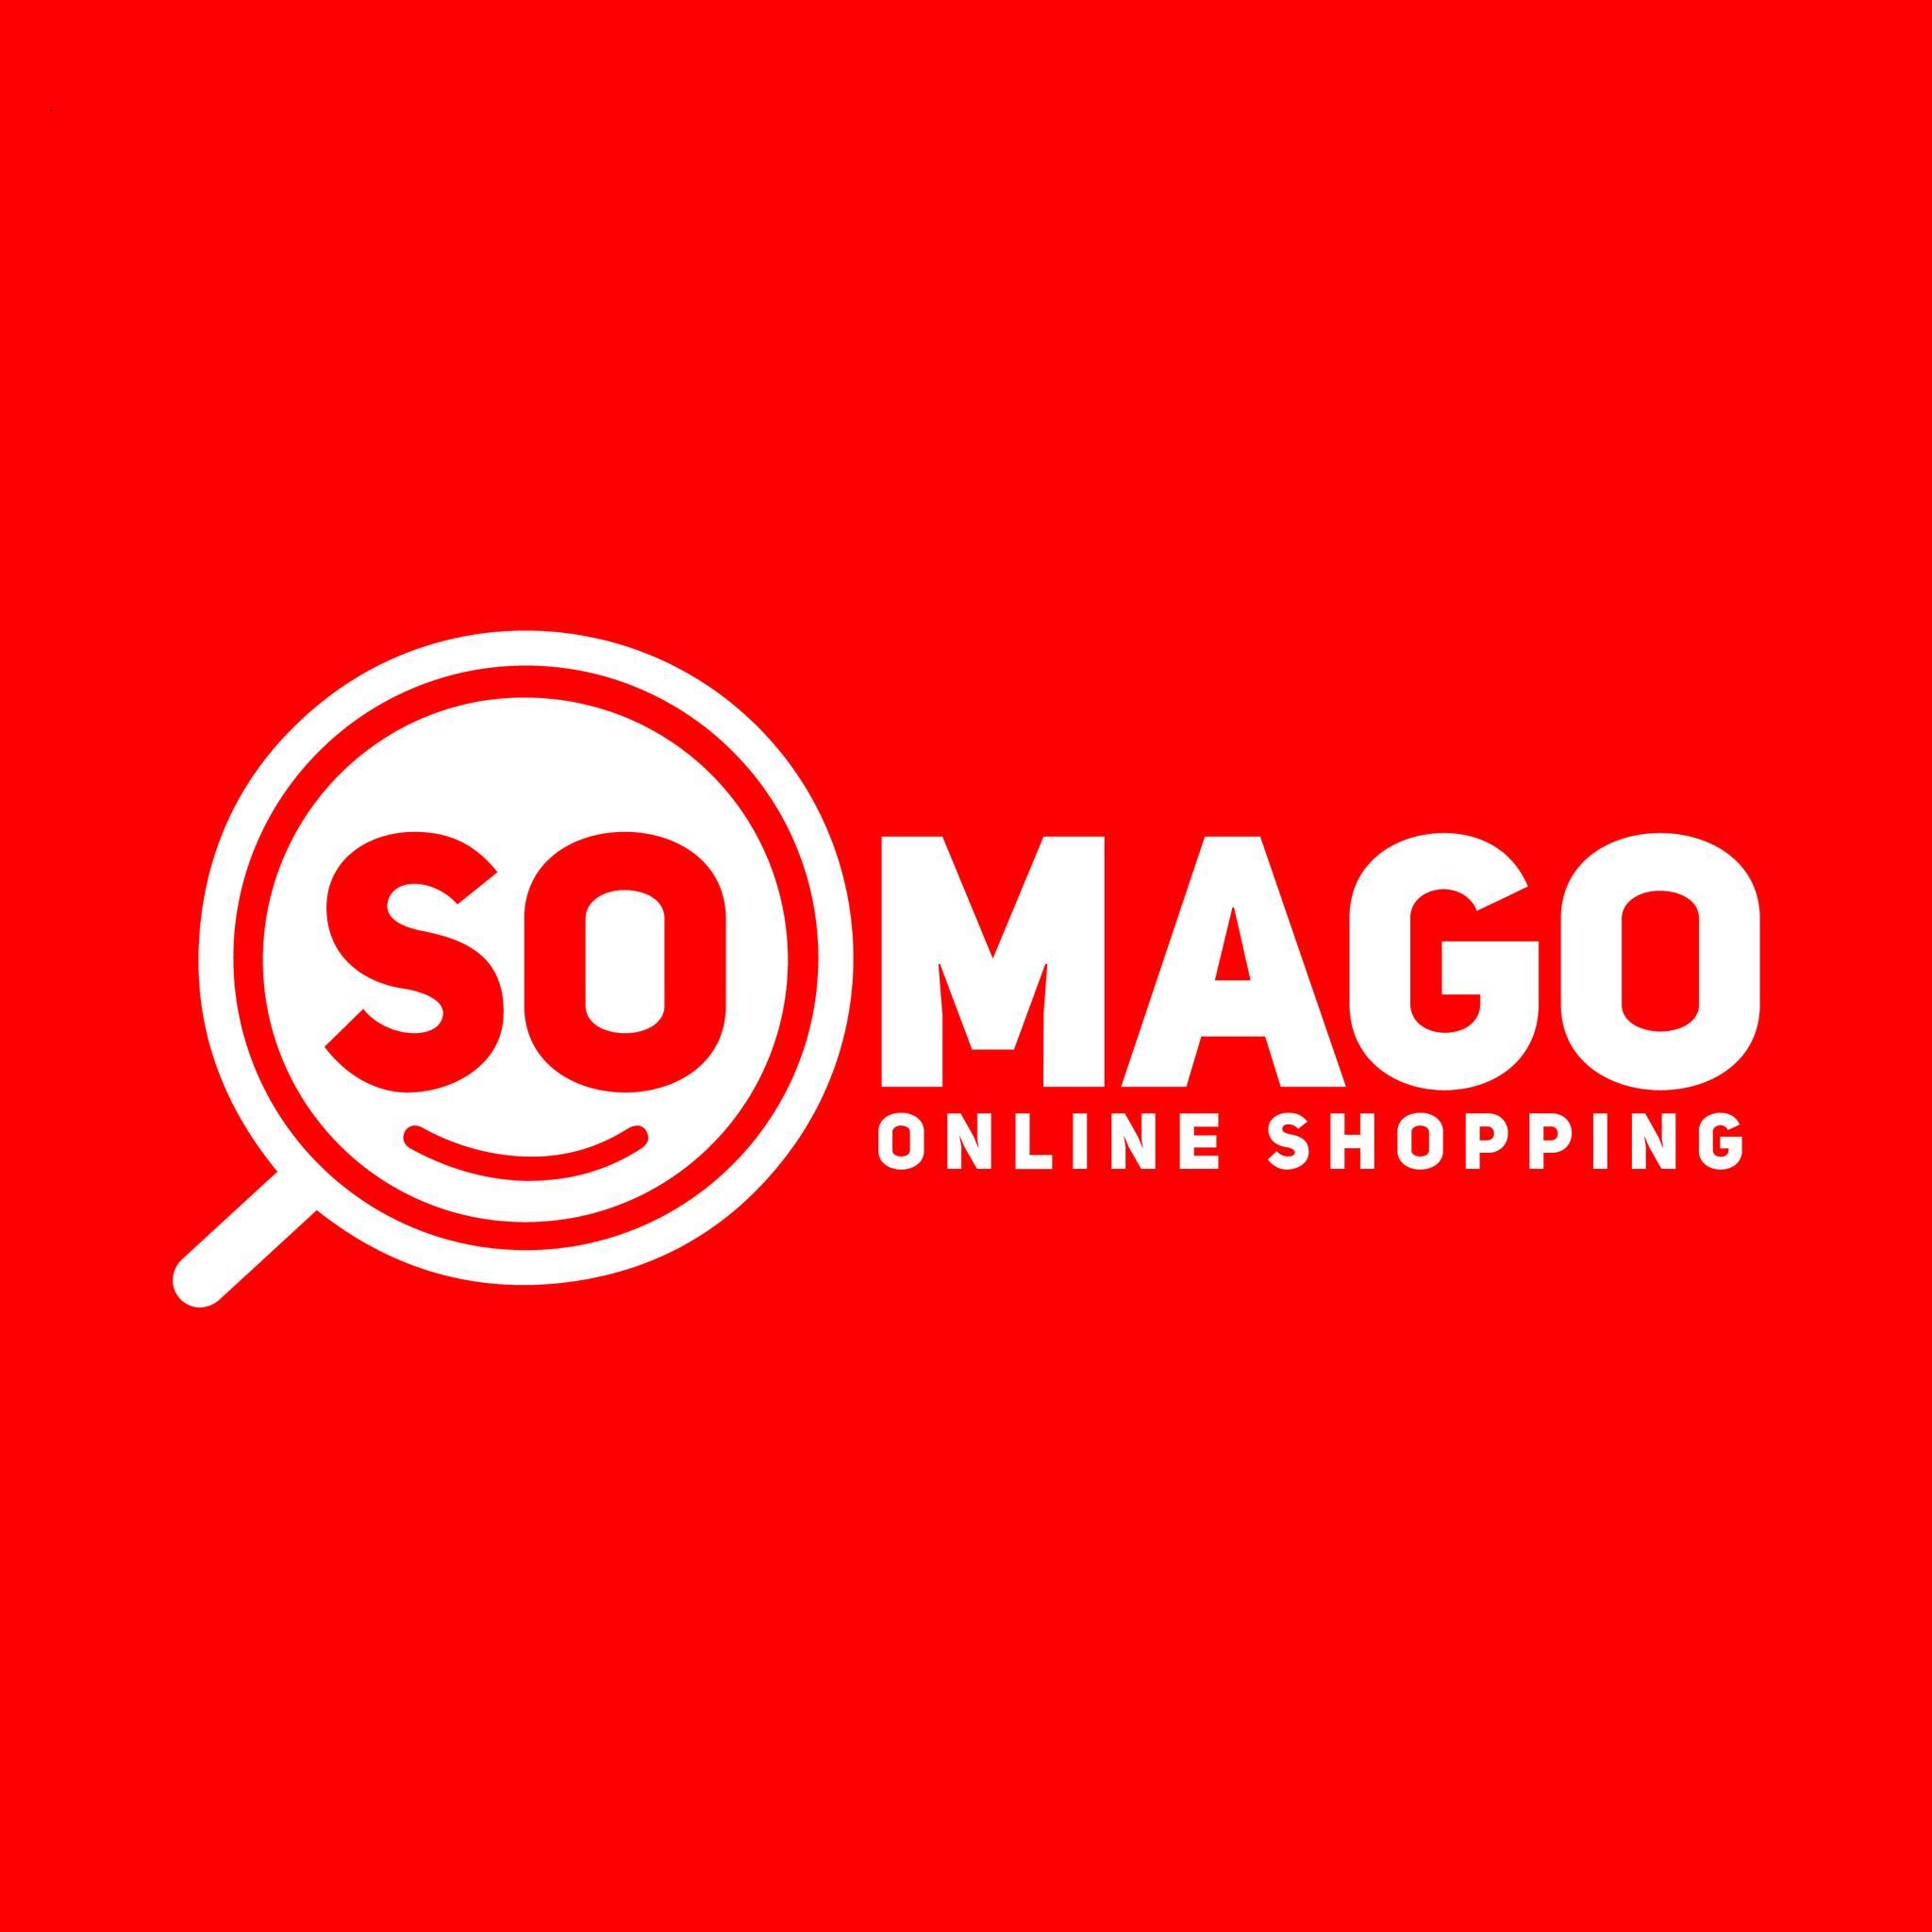 Somago Online Shopping